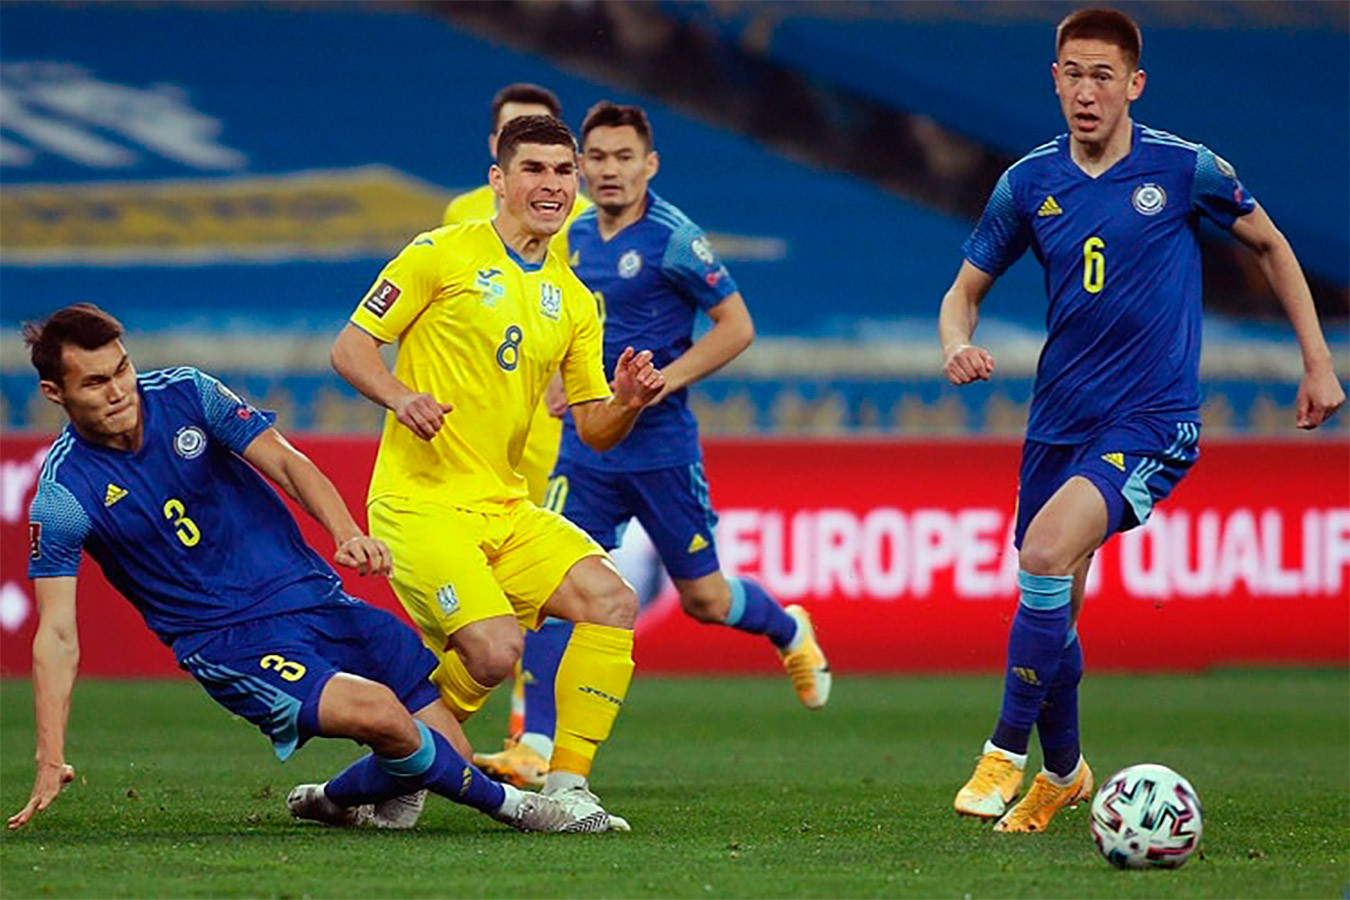 Украина упустила победу в матче с Казахстаном, Франция обыграла Боснию